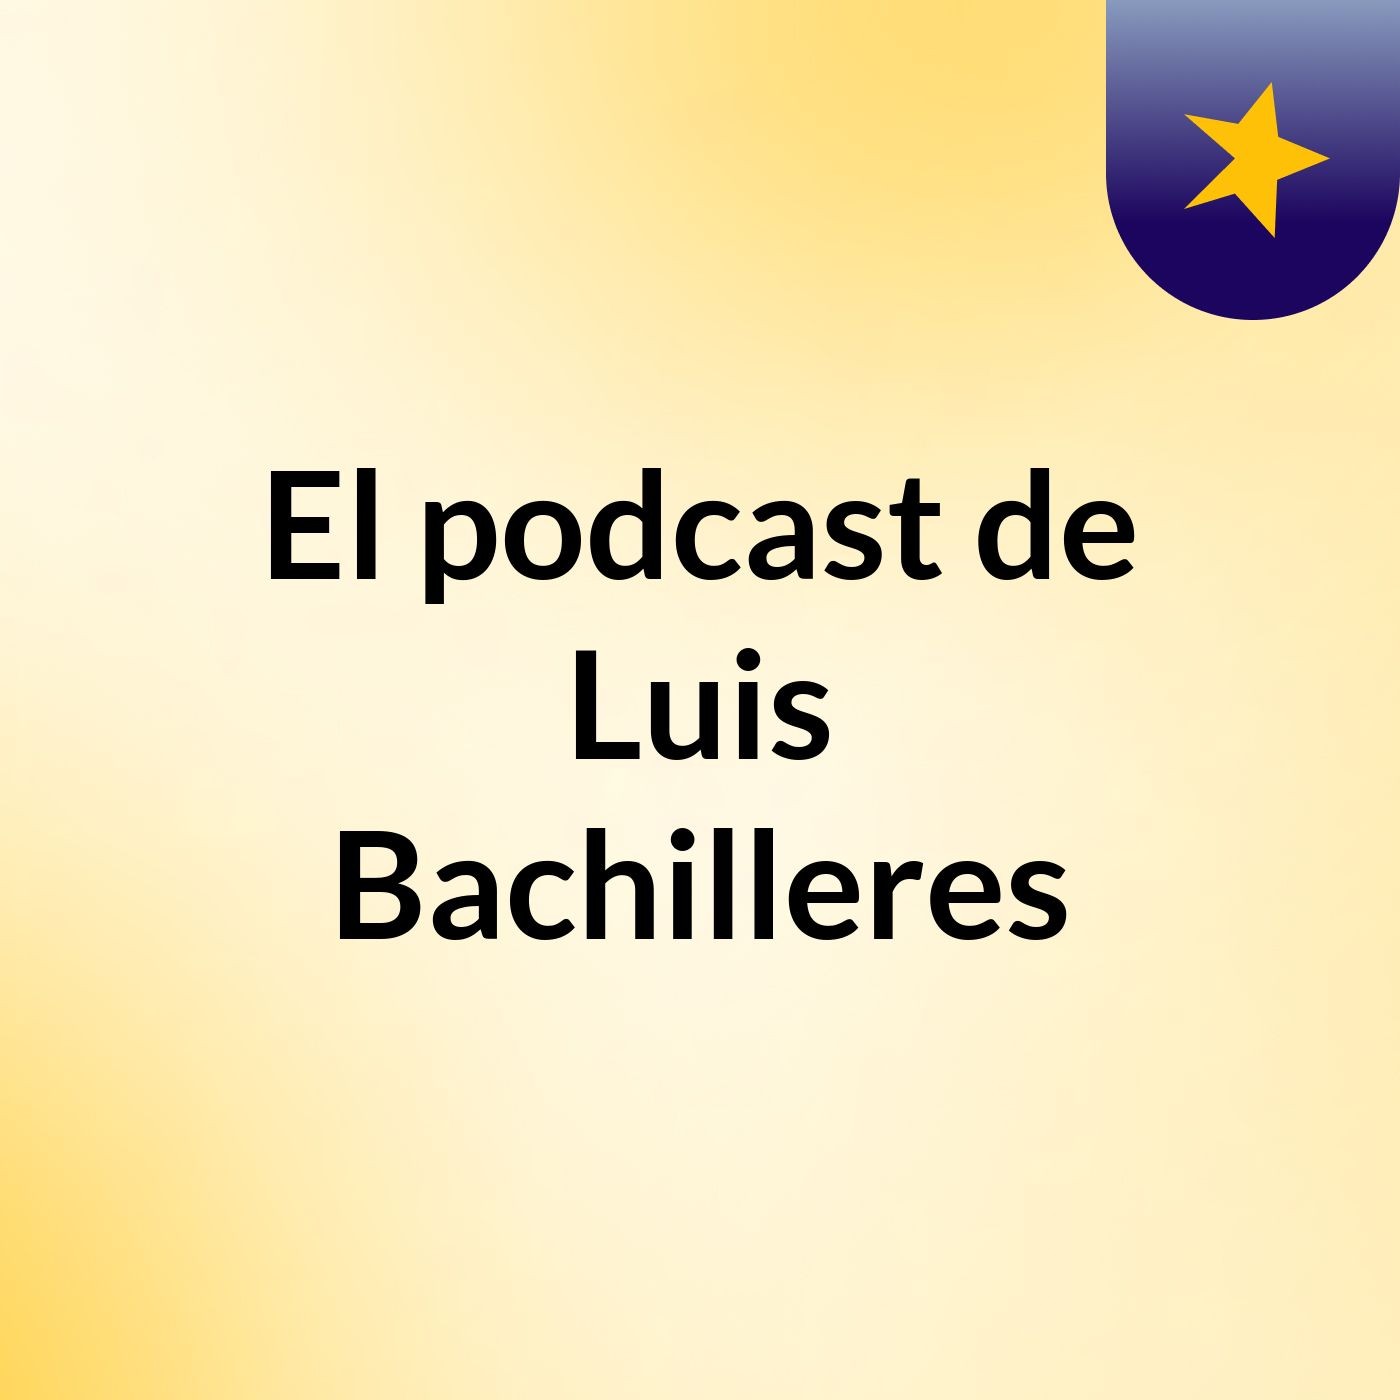 El podcast de Luis Bachilleres